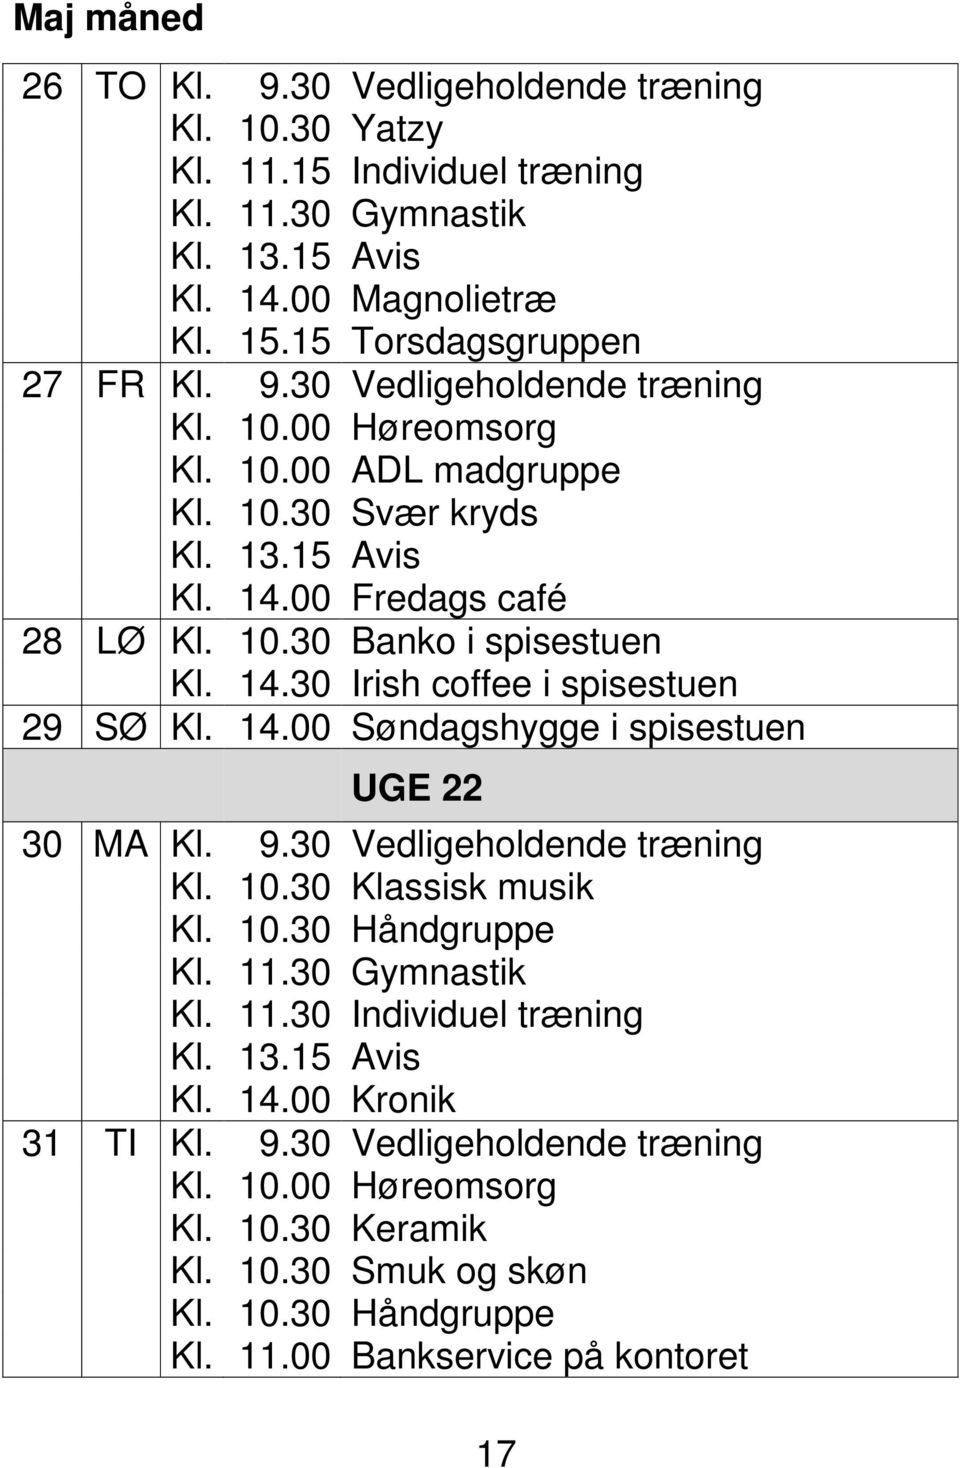 9.30 Vedligeholdende træning Kl. 10.30 Klassisk musik Kl. 10.30 Håndgruppe Kl. 11.30 Gymnastik Kl. 11.30 Individuel træning Kl. 14.00 Kronik 31 TI Kl. 9.